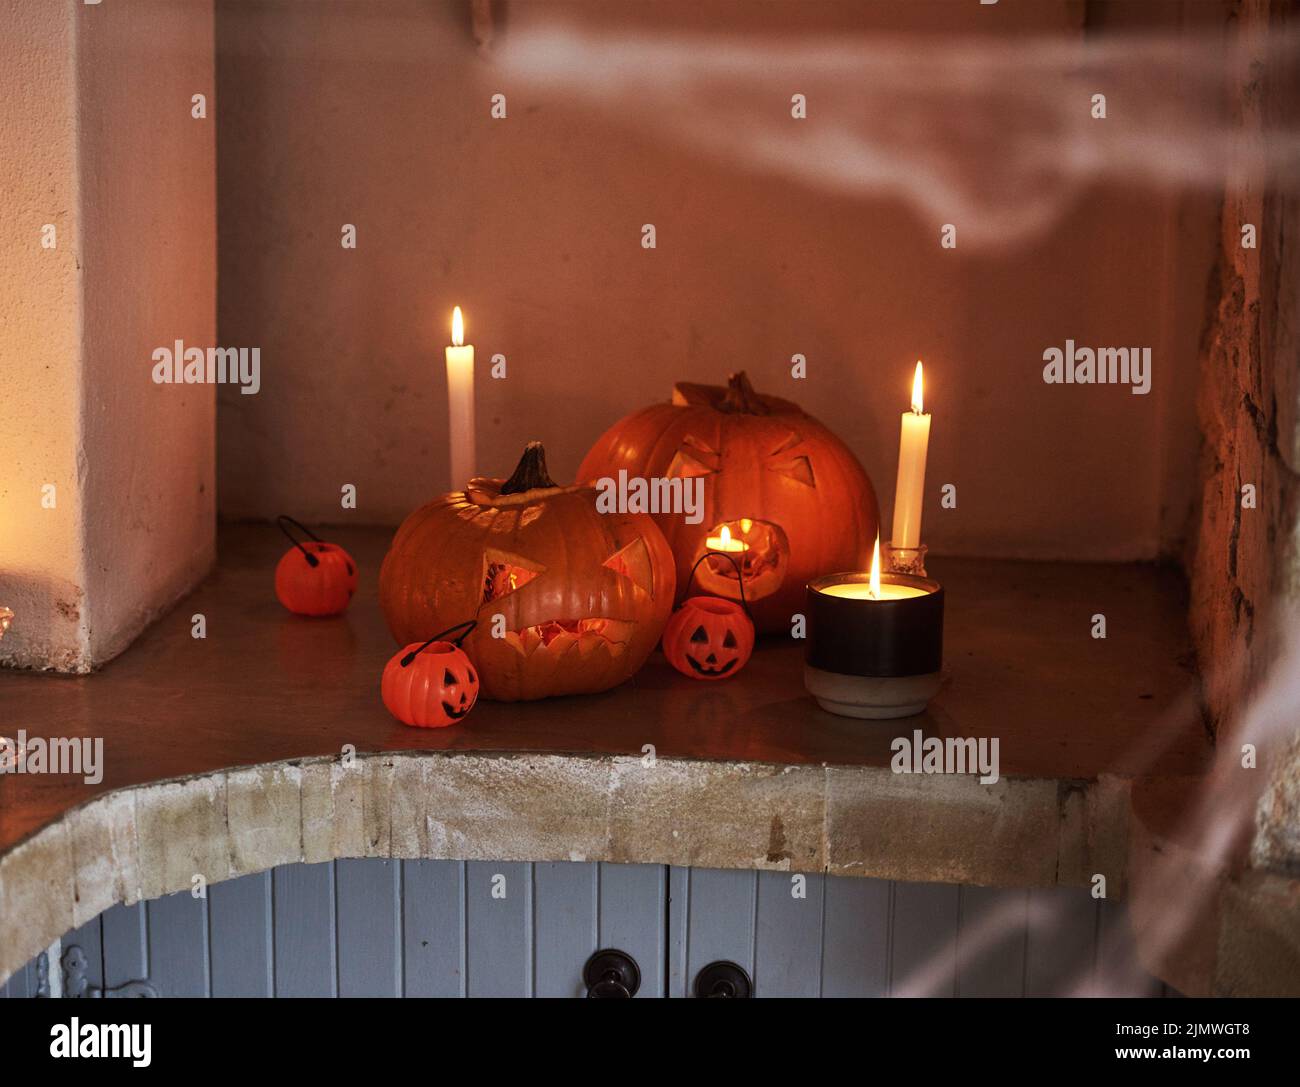 Esta es una visión aterradora. Fotografía de calabazas talladas y velas encendidas colocadas juntas en celebración de Halloween. Foto de stock